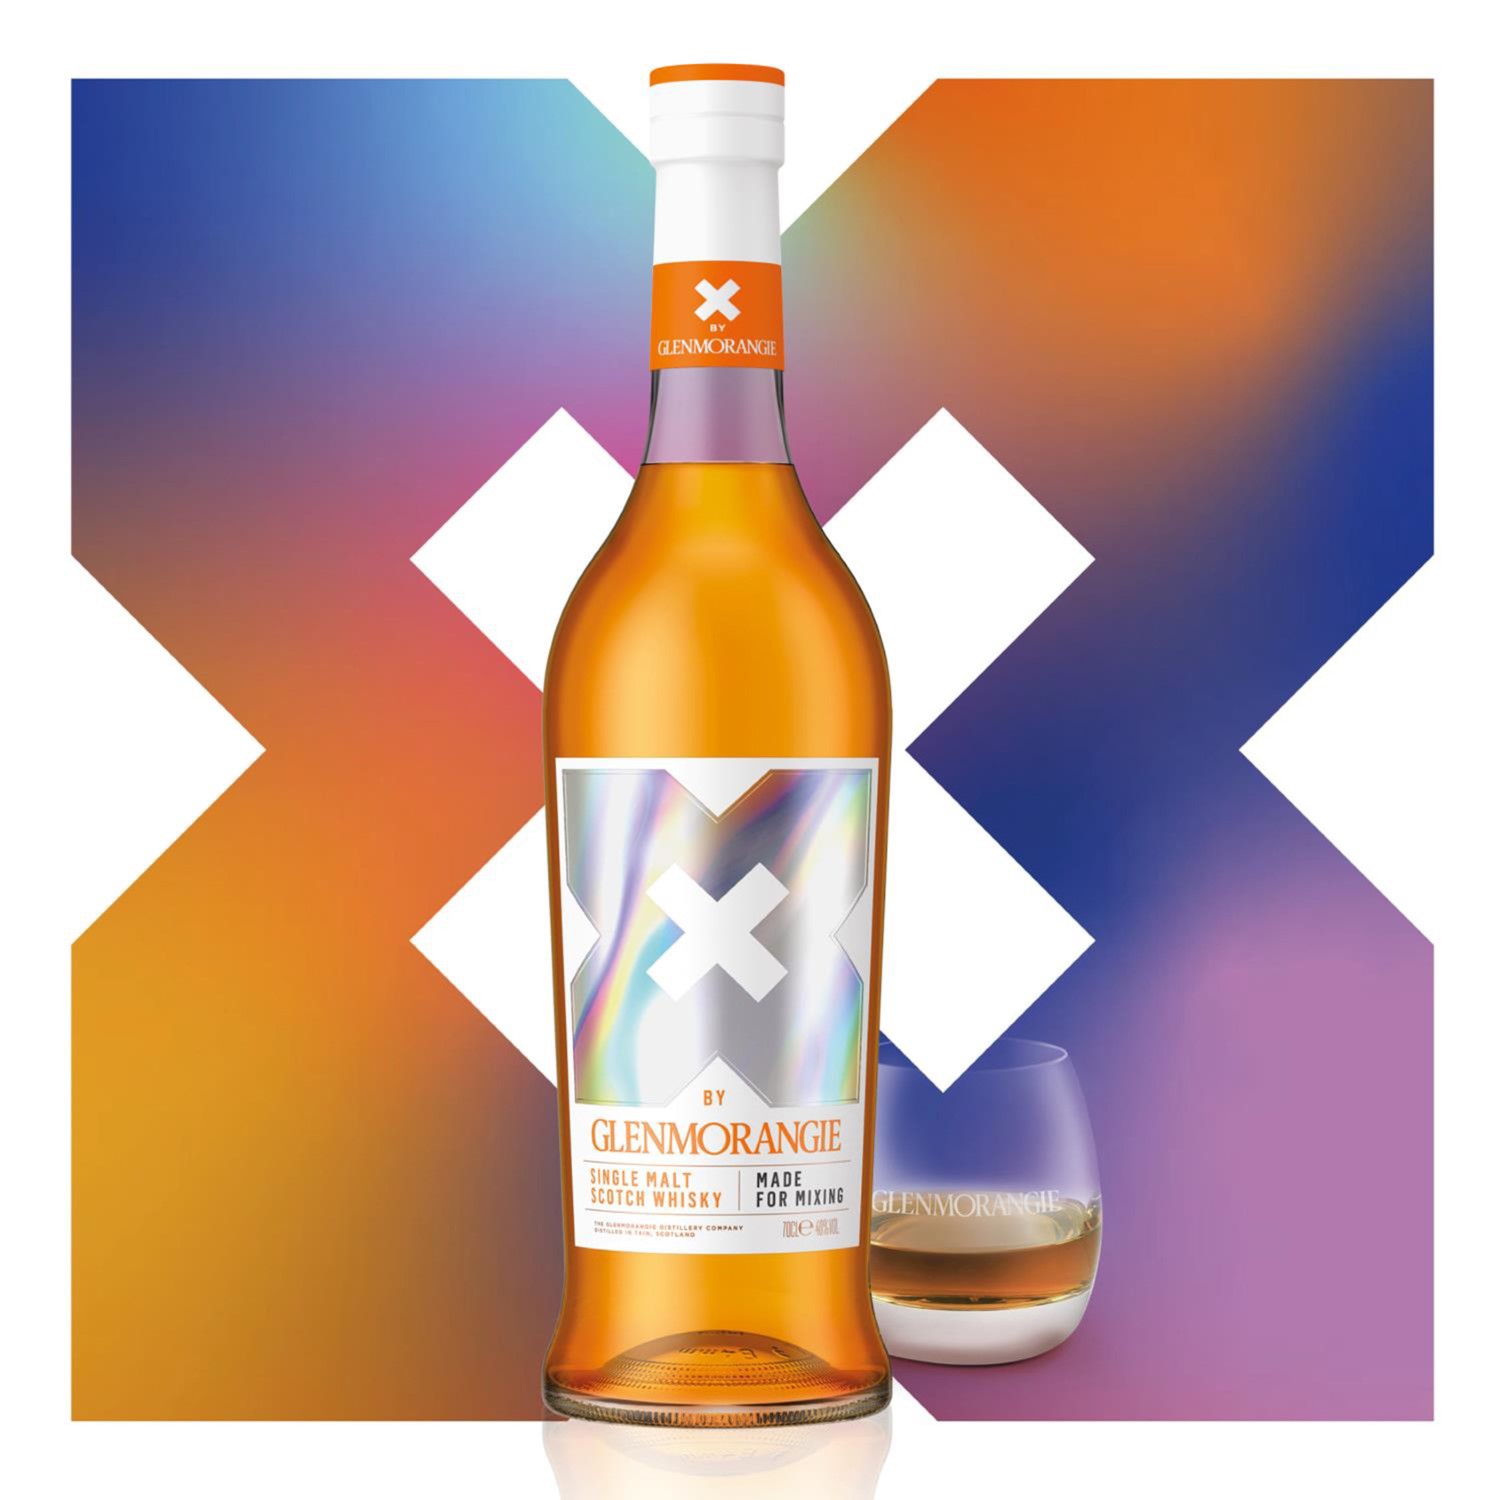 Glenmorangie 'X' Single Malt Scotch :: Single Malt Scotch